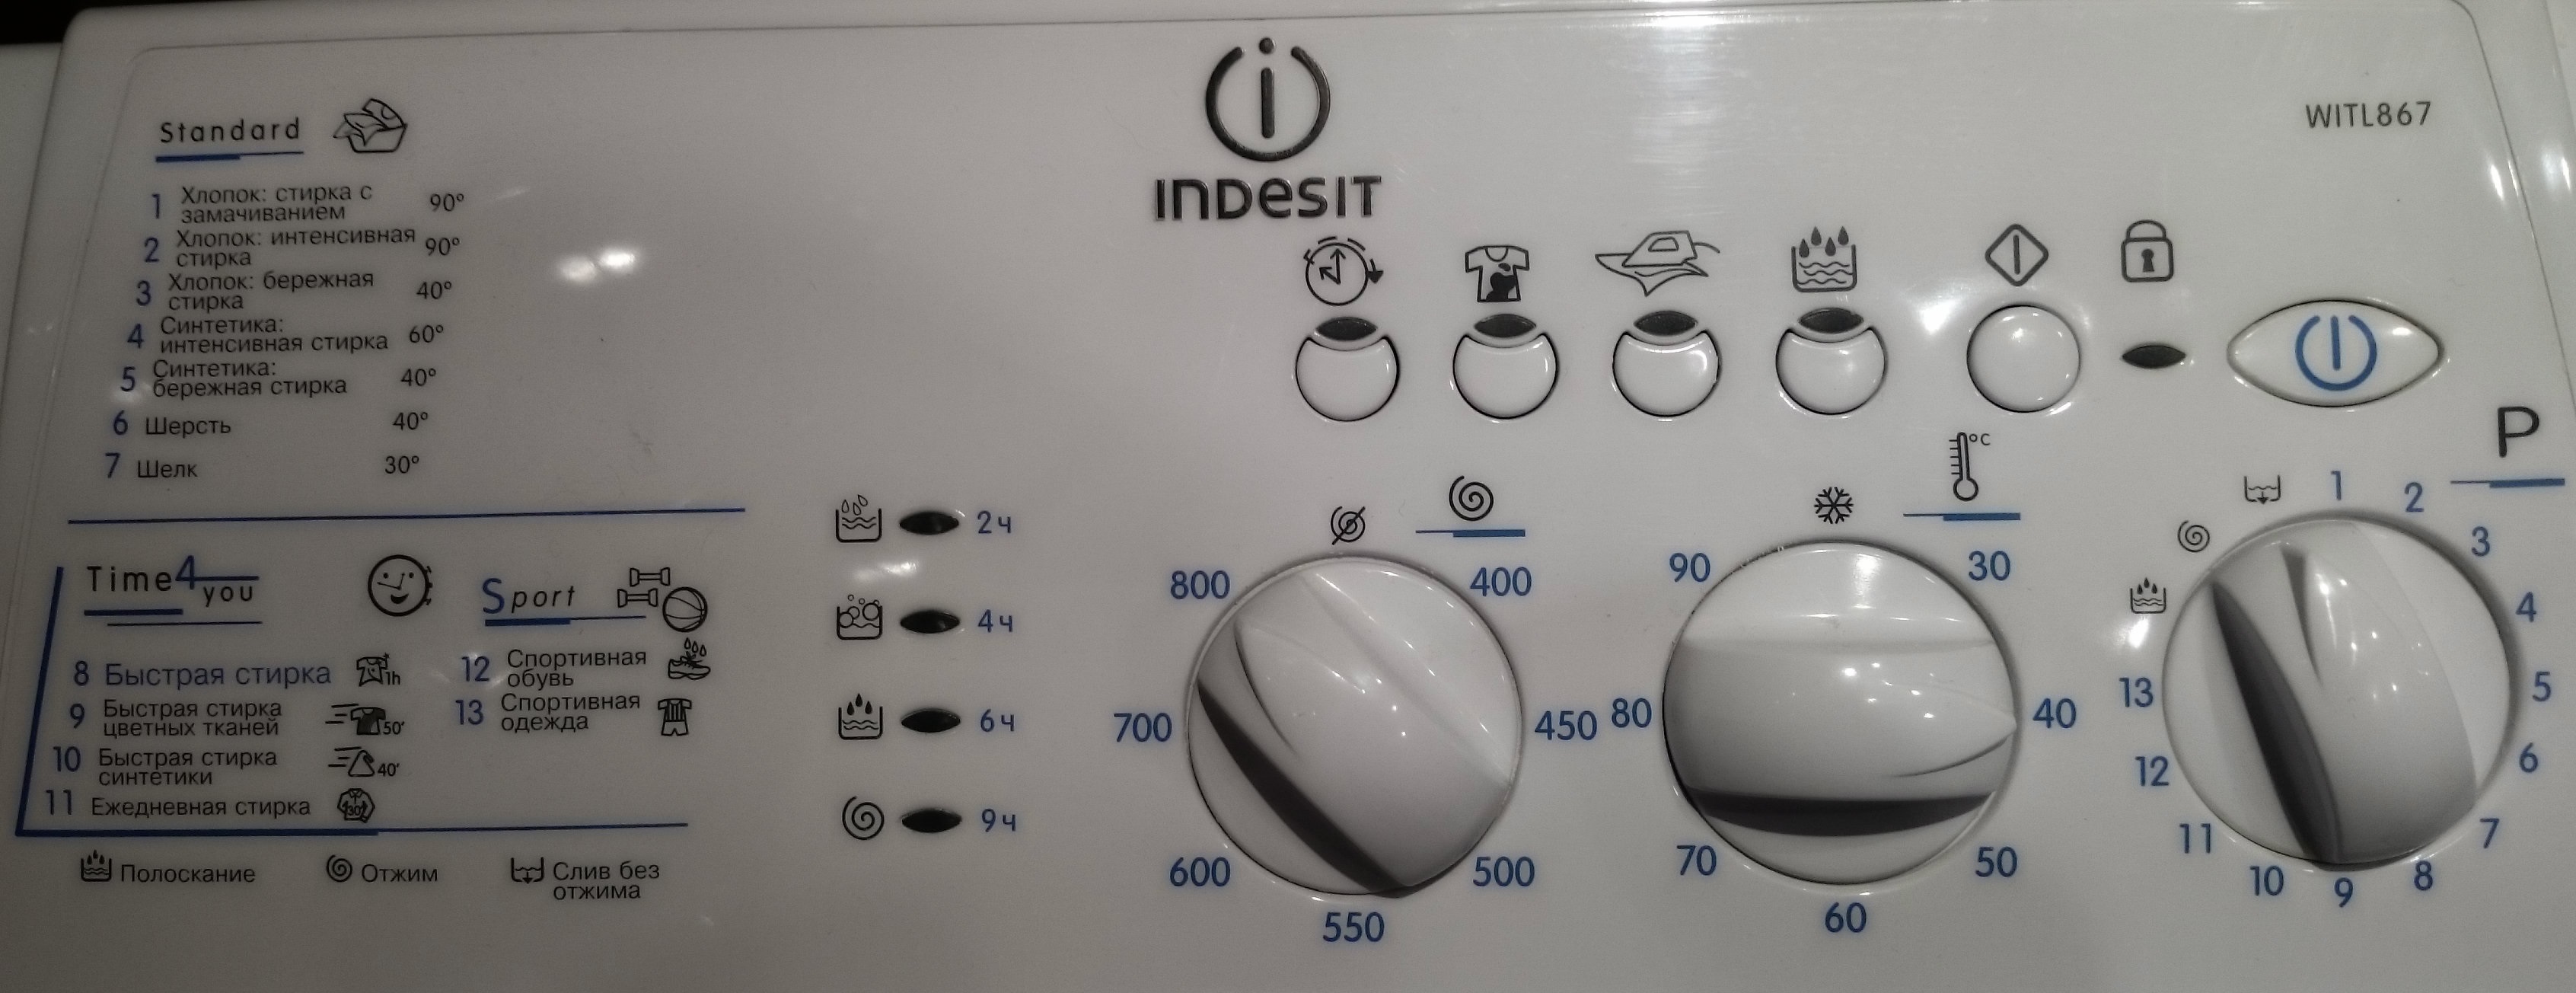 σταματώντας τη μηχανή Indesit